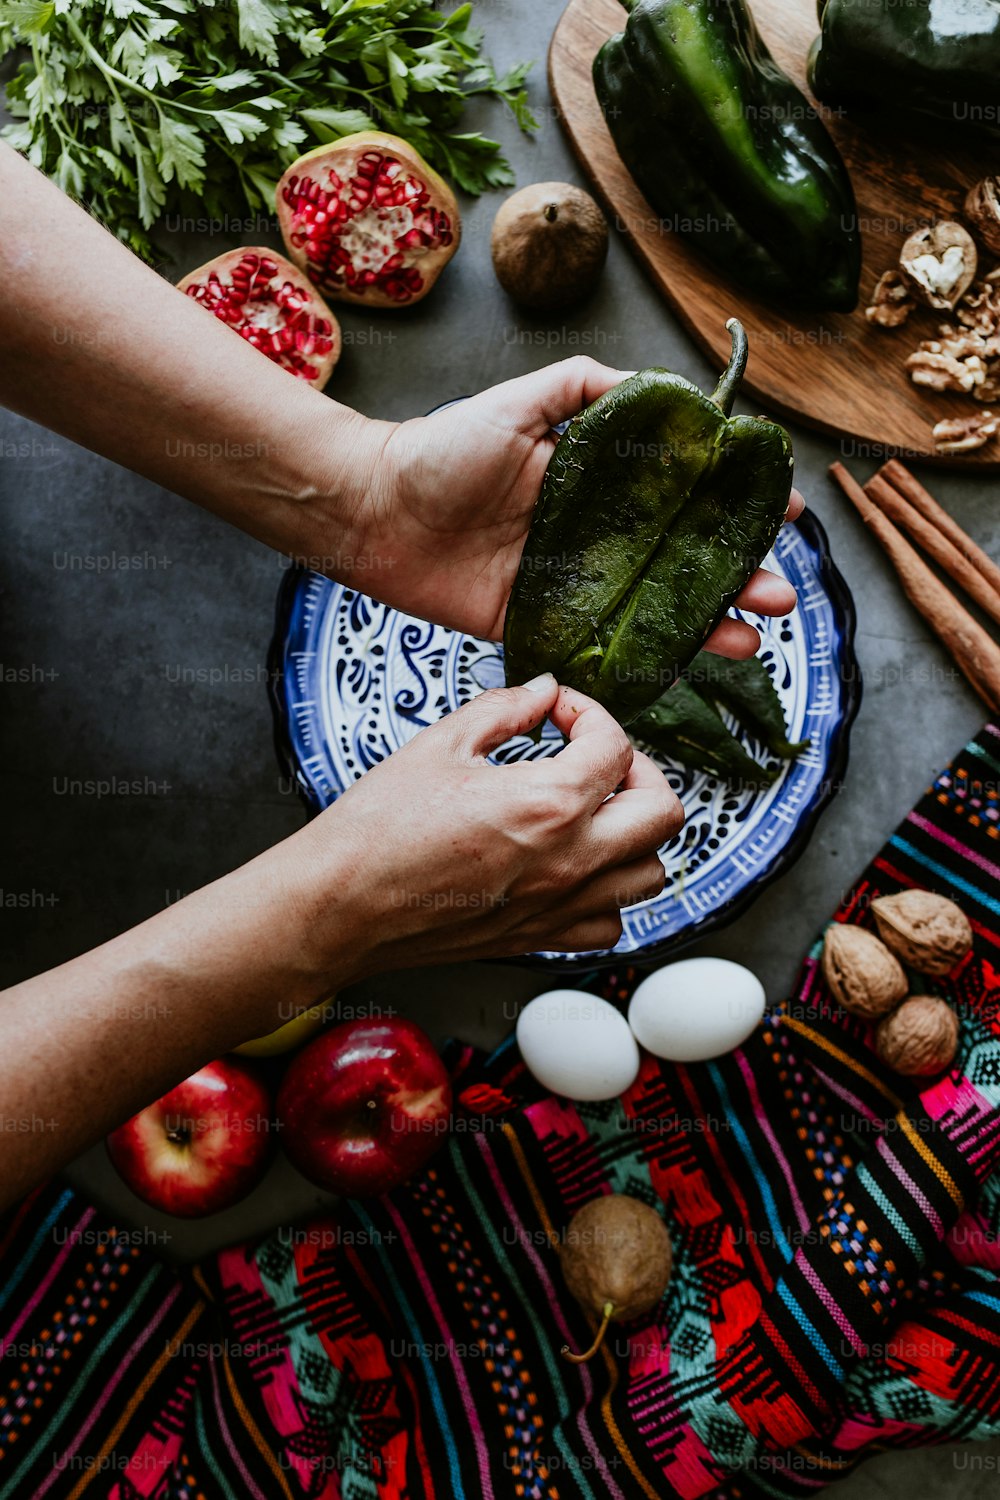 Mujer mexicana cocinando chiles en nogada receta con chile poblano e ingredientes, platillo tradicional en Puebla México